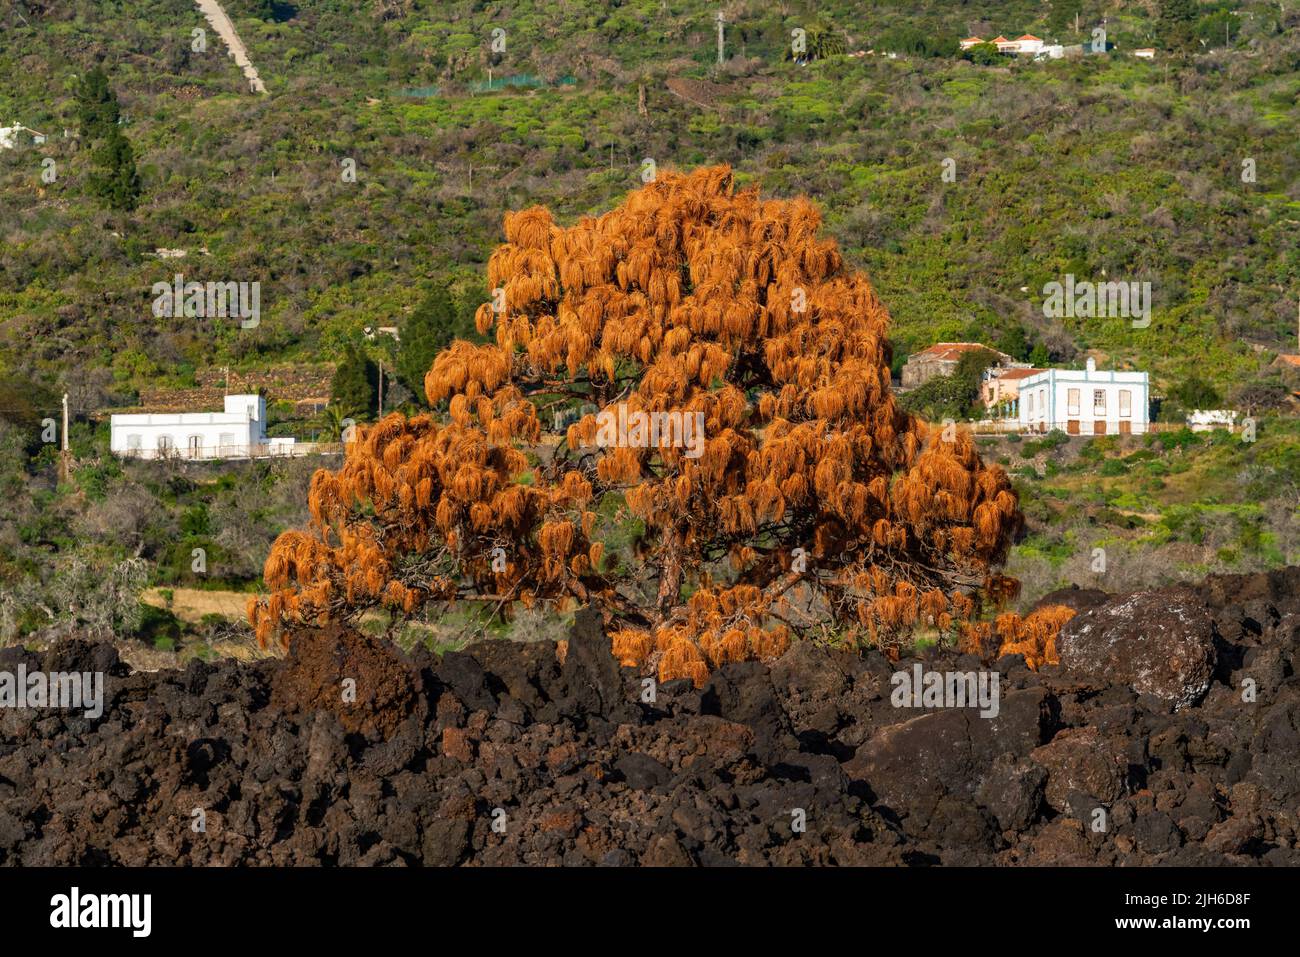 Verwelkter Baum im Lavastrom, Vulkan Tajogaite aus dem Jahr 2021, Insel La Palma, Kanarische Inseln, Spanien Stockfoto